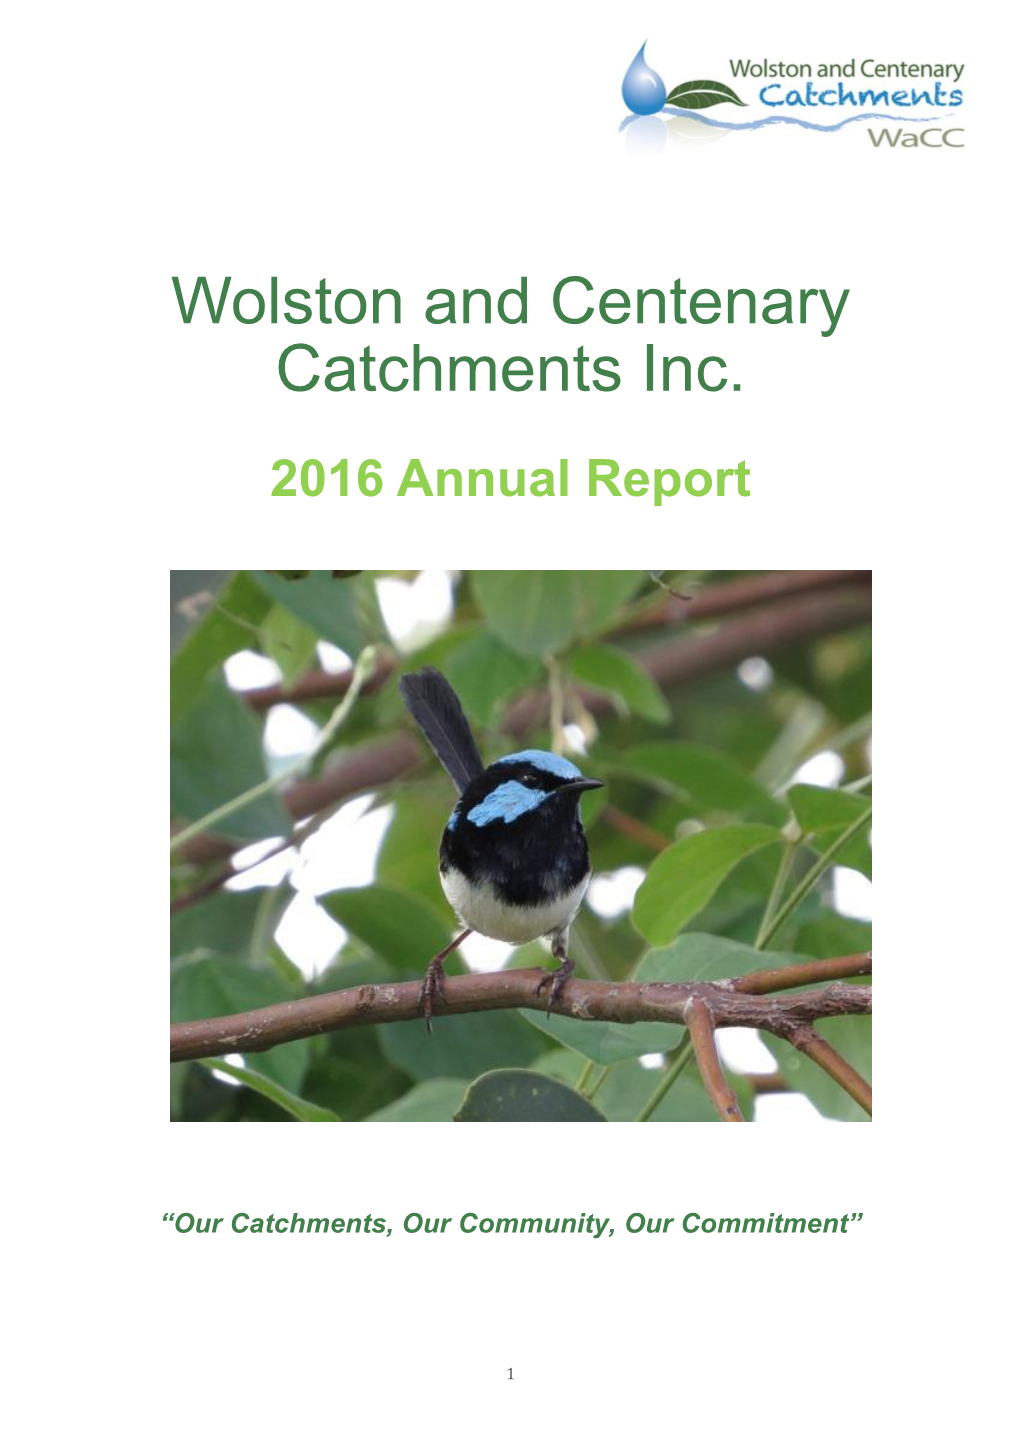 Wacc Annual Report 2016